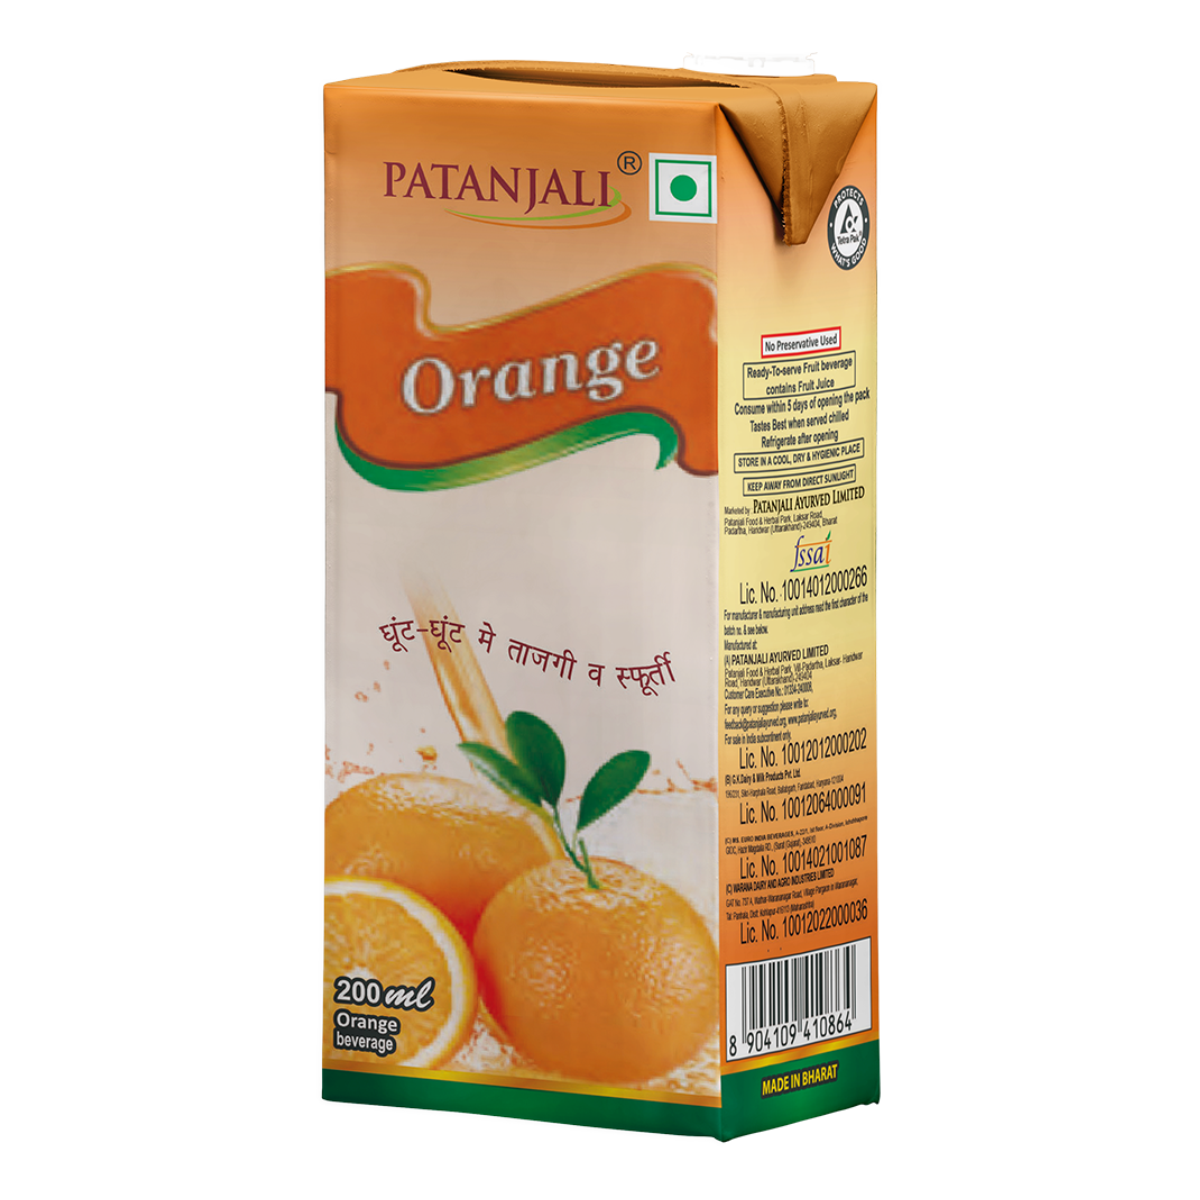 Patanjali Orange Beverage